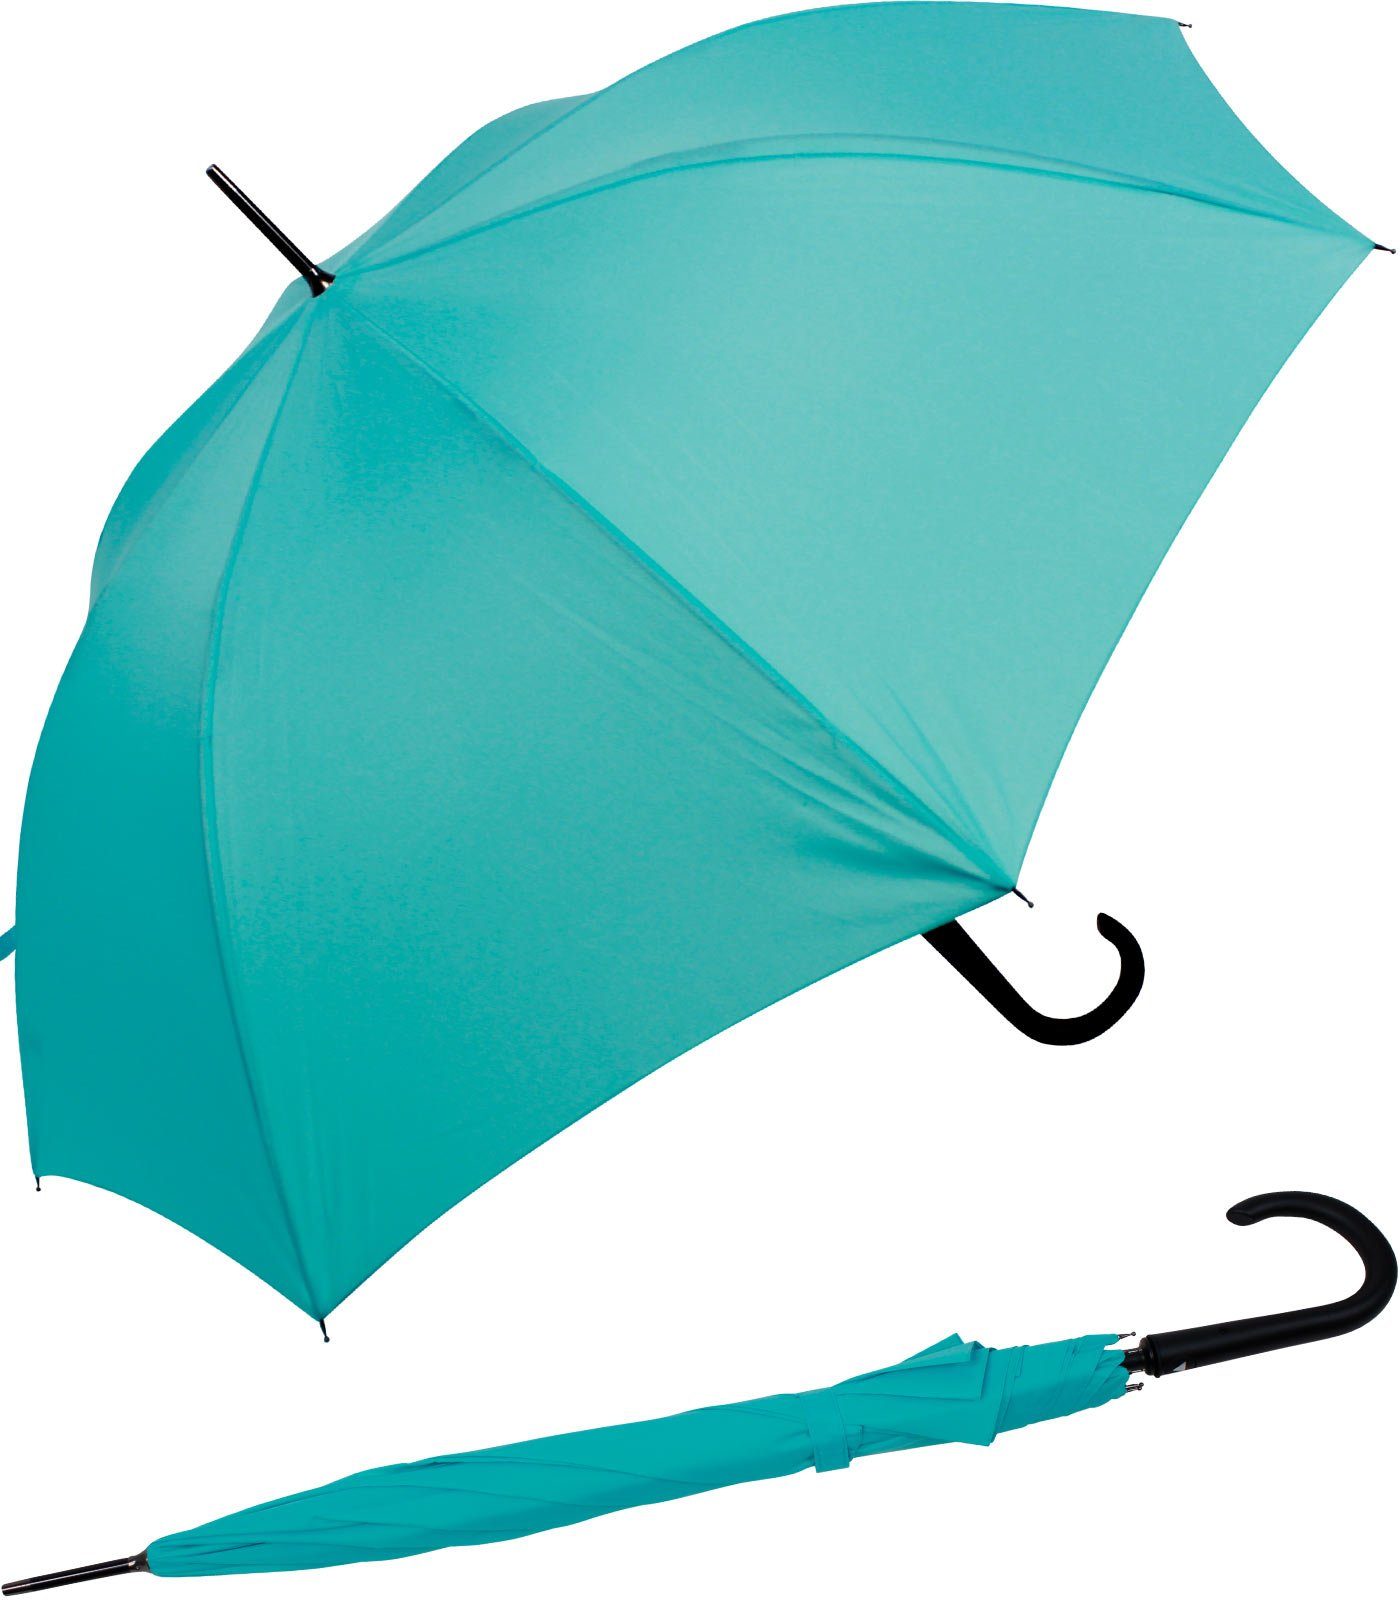 RS-Versand Langregenschirm großer stabiler Regenschirm mit Auf-Automatik, Stahl-Fiberglas-Gestell, integrierter Auslöseknopf hellblau